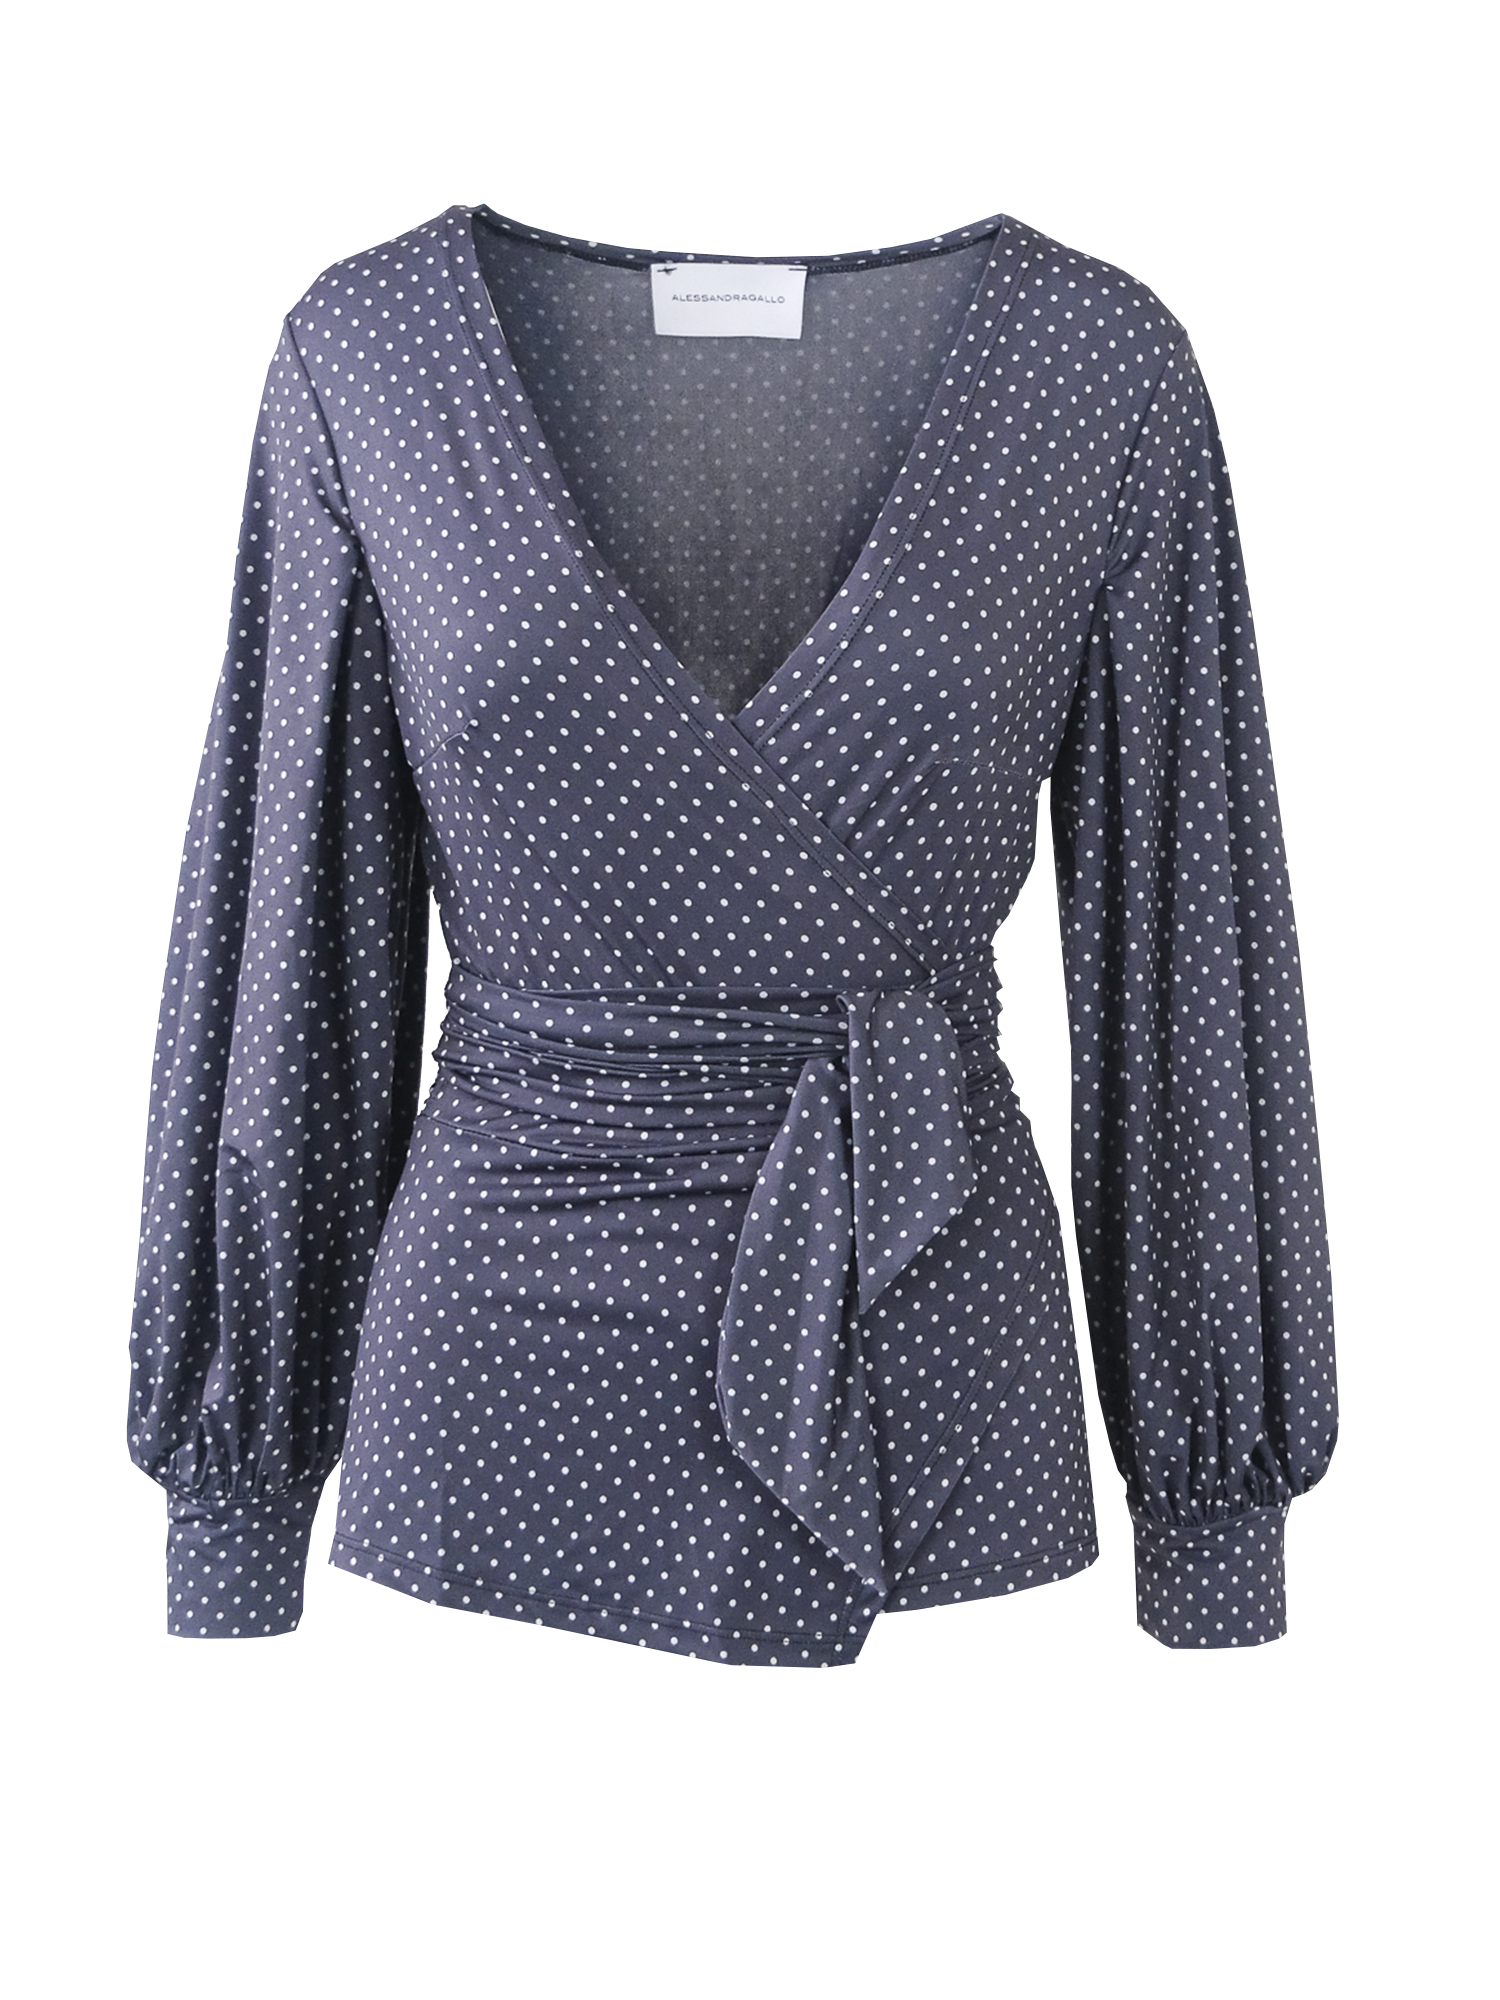 CLOE - Polka dot pattern lycra kimono shirt